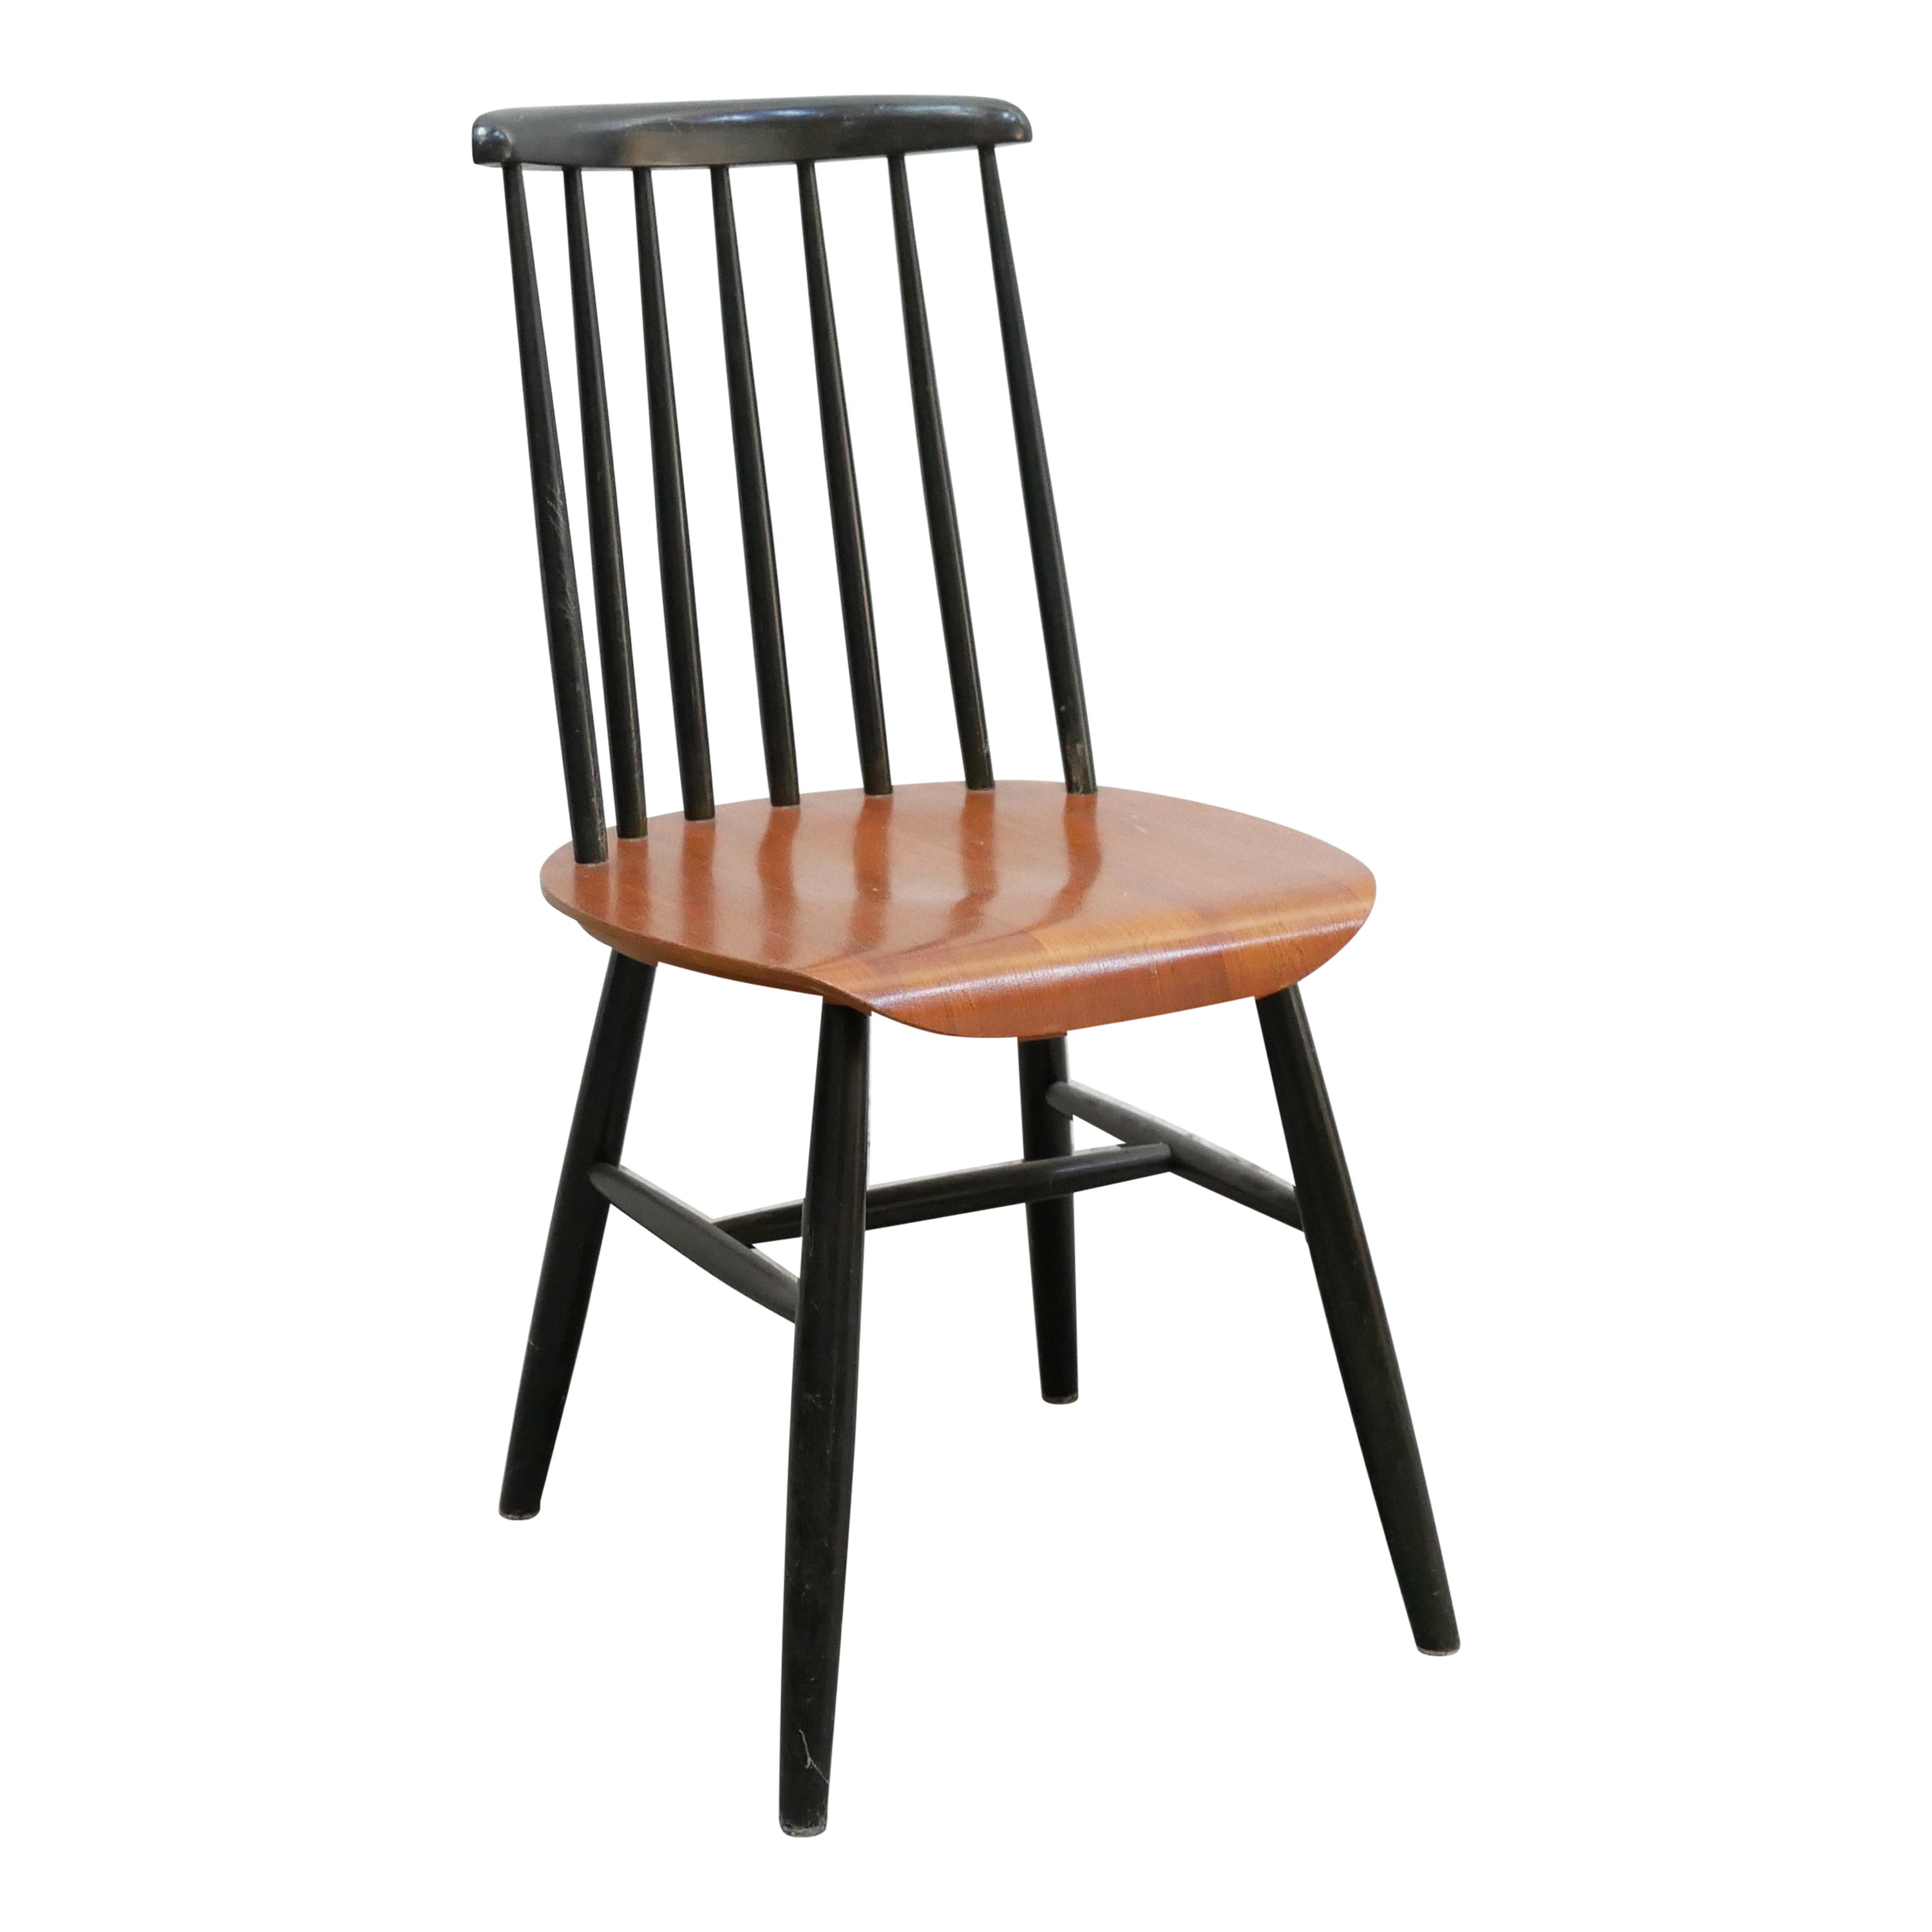 Vintage Scandinavian chair by I.Tapiovaara model Fanett For Sale